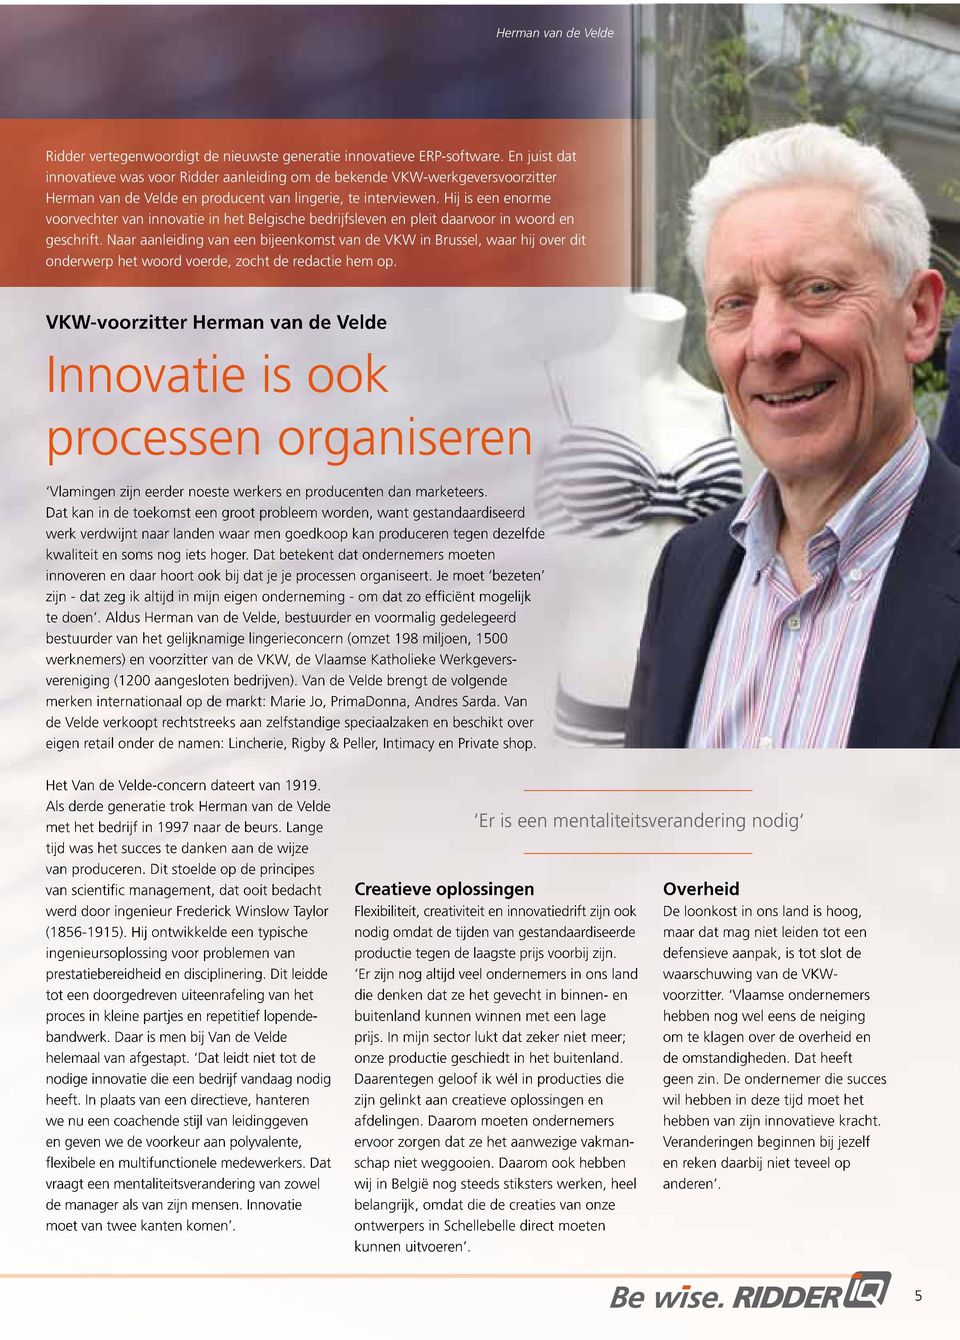 Hij is een enorme voorvechter van innovatie in het Belgische bedrijfsleven en pleit daarvoor in woord en geschrift.